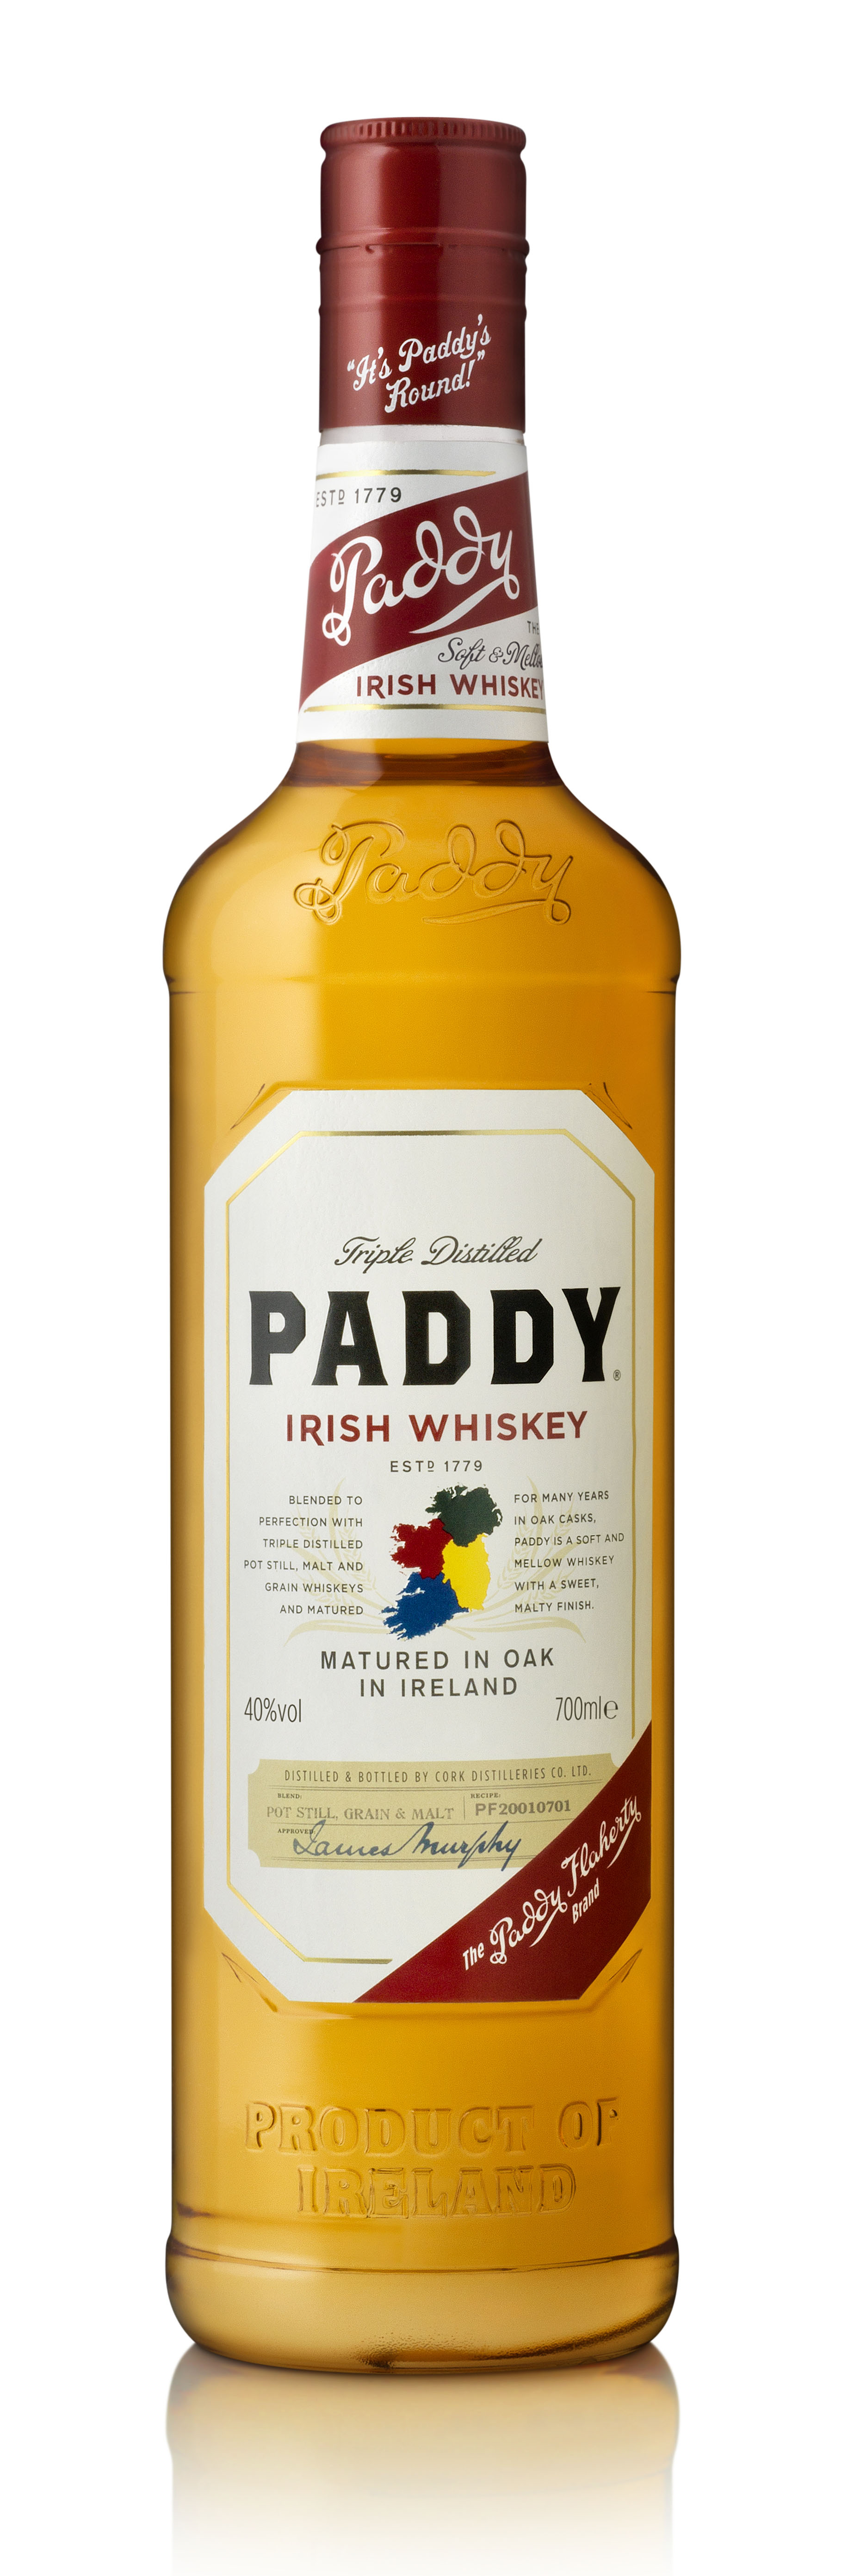 Paddy Irish Whisky